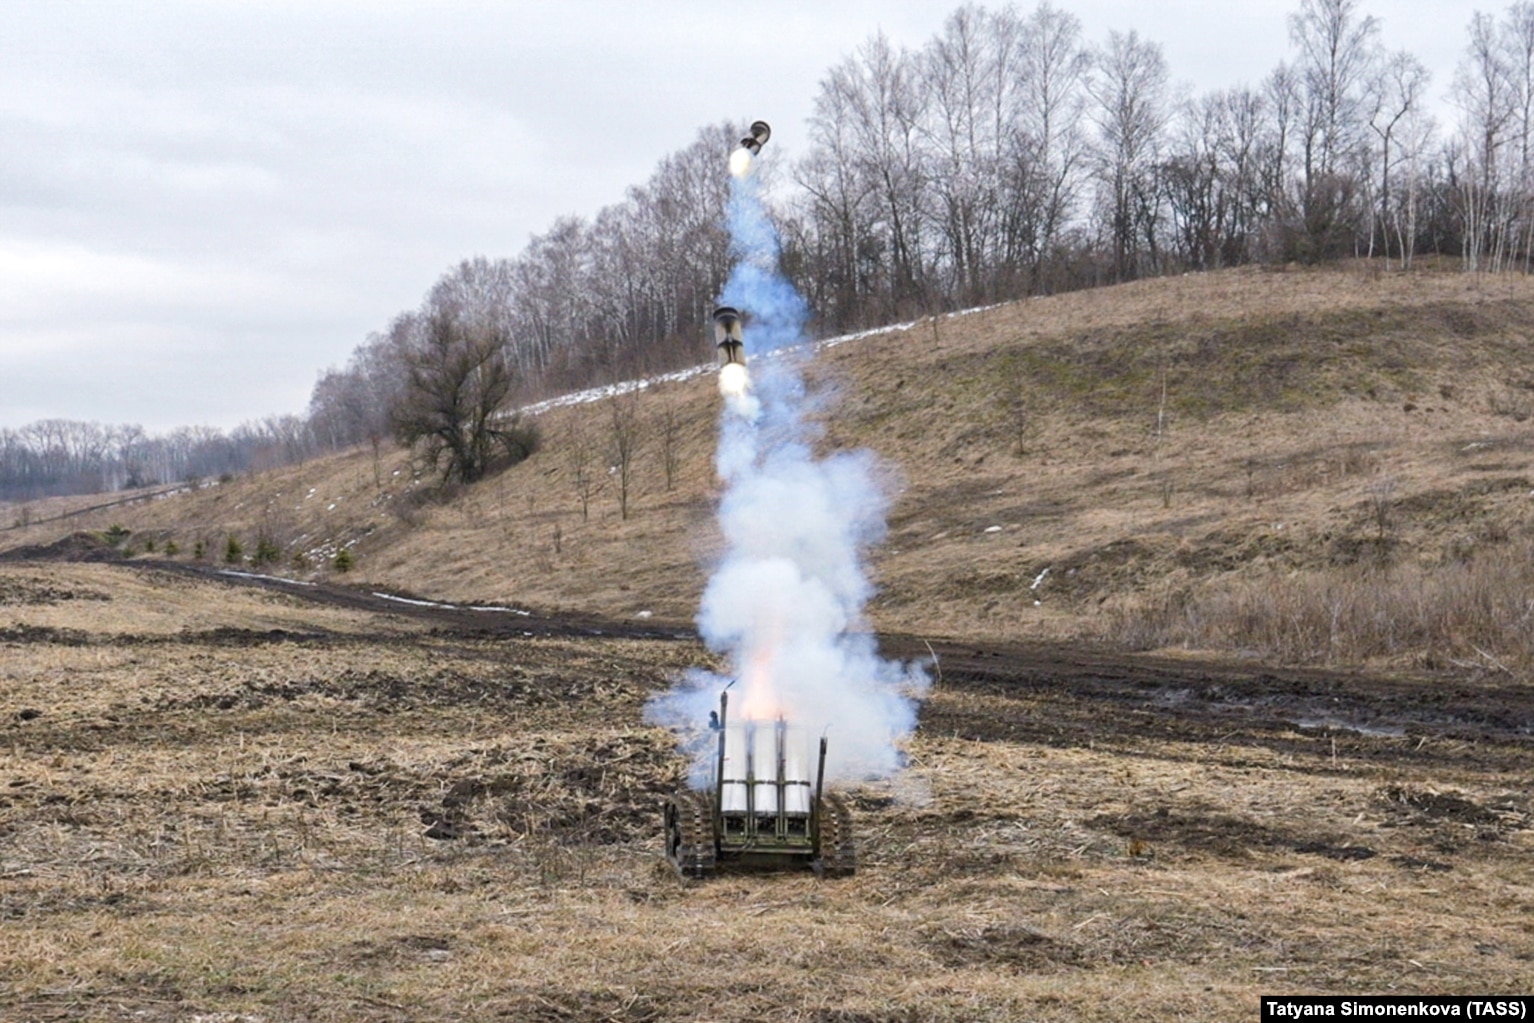 Një mjet pa pilot për vendosjen e minave testohet në rajonin e Rusisë, Belgorod, 1 prill.